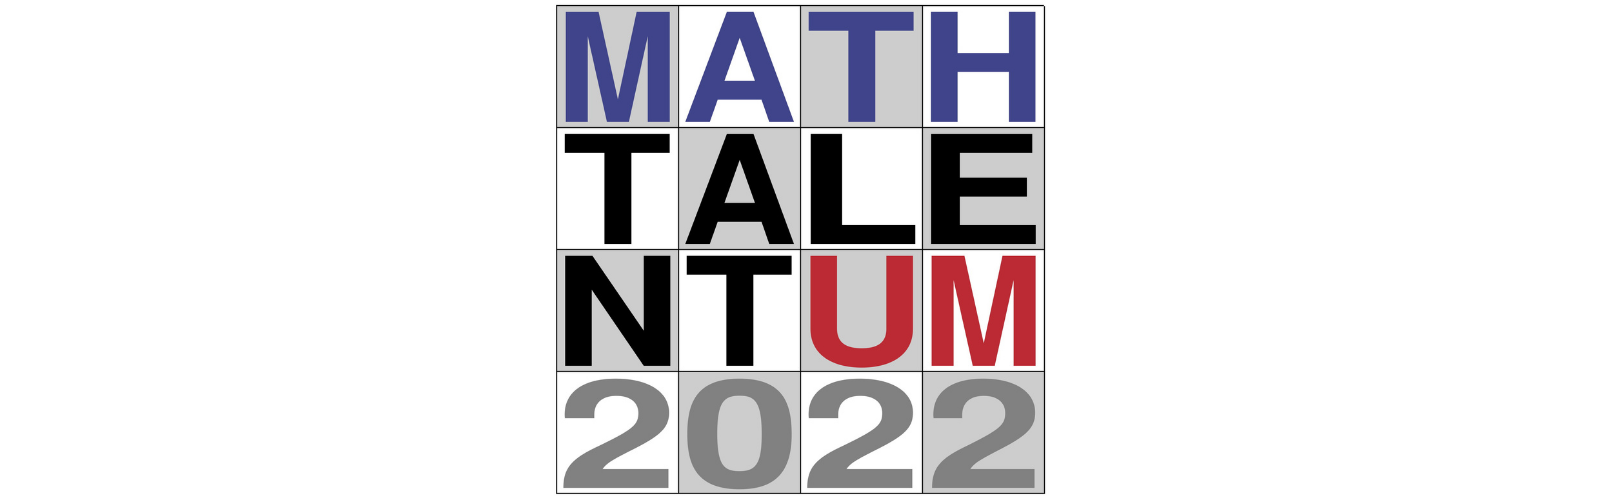 14 equipos llegan a la Fase Final de Math_TalentUM, que tendrá lugar el 29 de abril